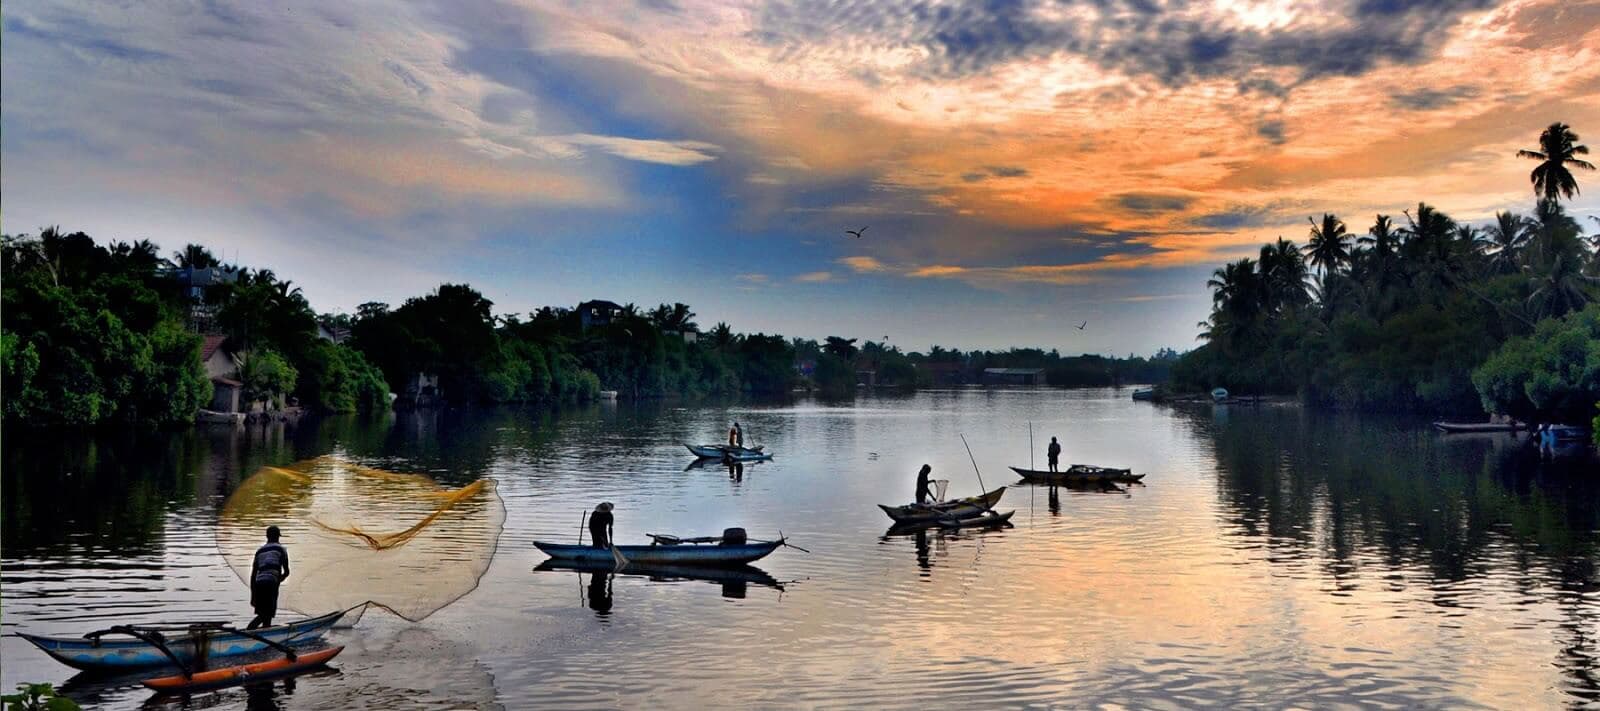 A beautiful scenery of Negombo inland fishing Sri Lanka